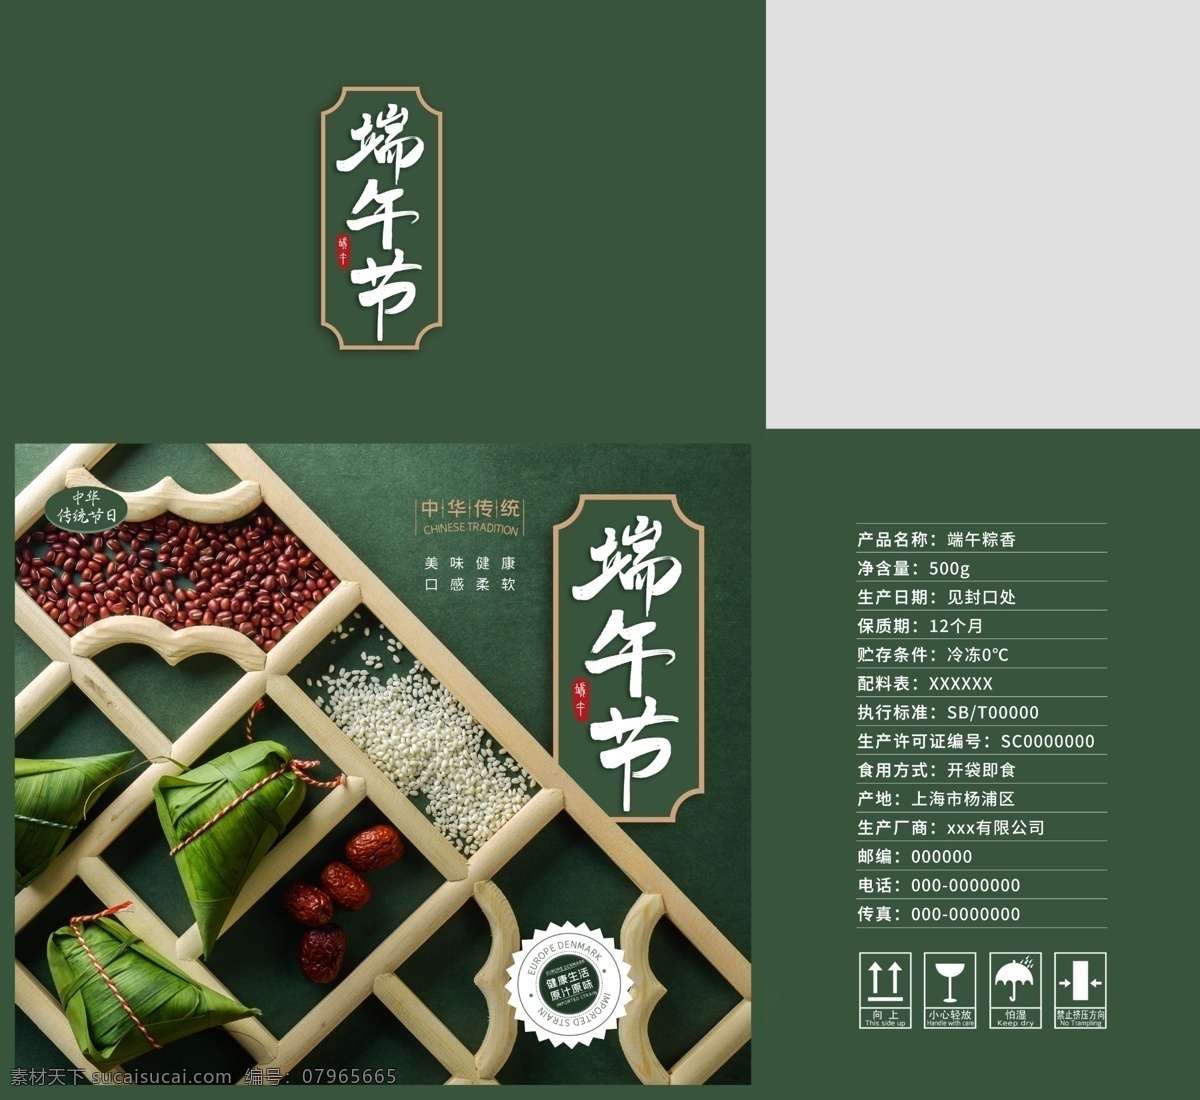 粽子包装设计 粽子 端午节 传统 节日 包装 箱子